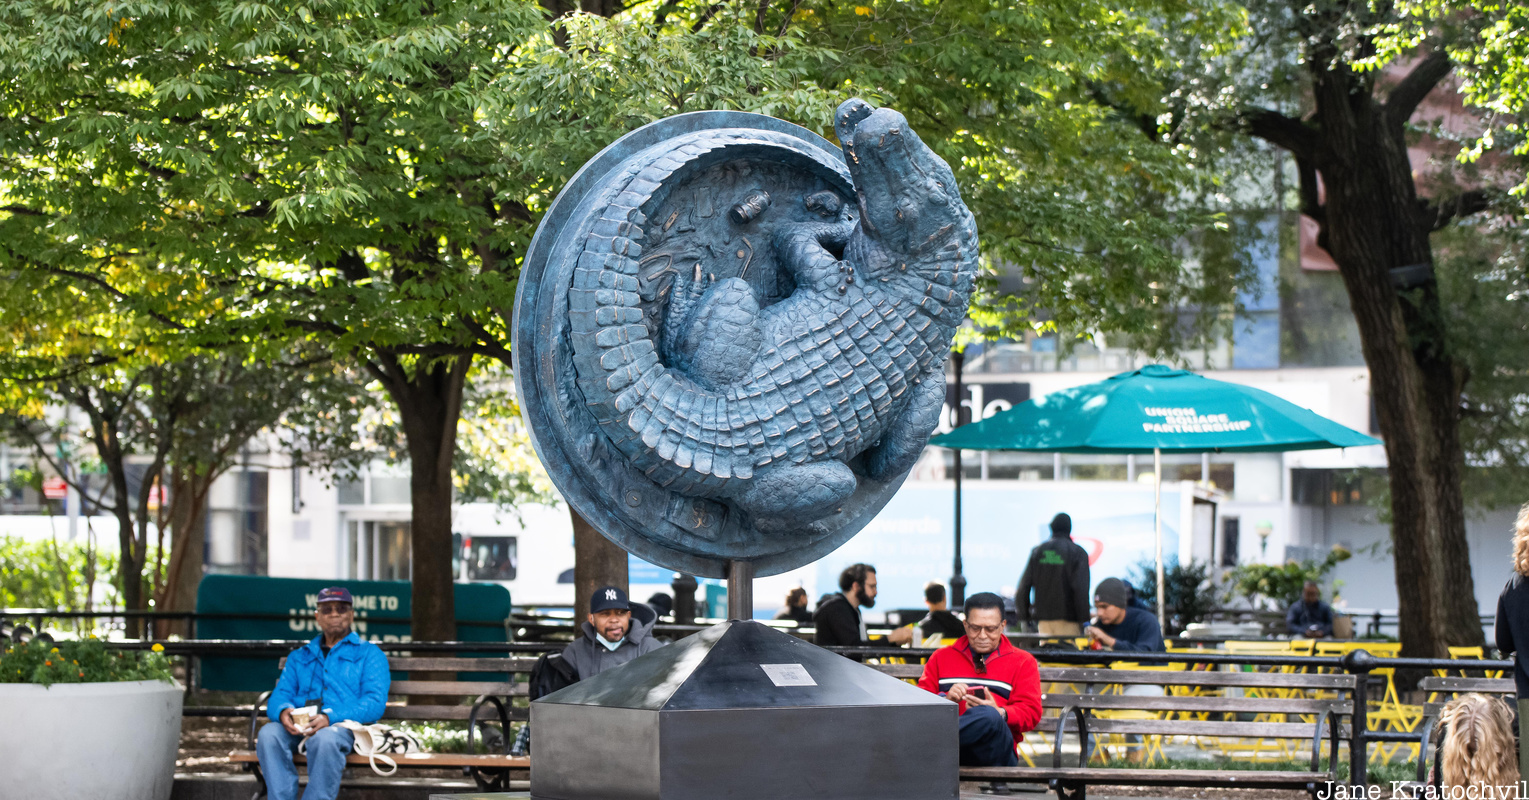 Alligator art sculpture in Union Square